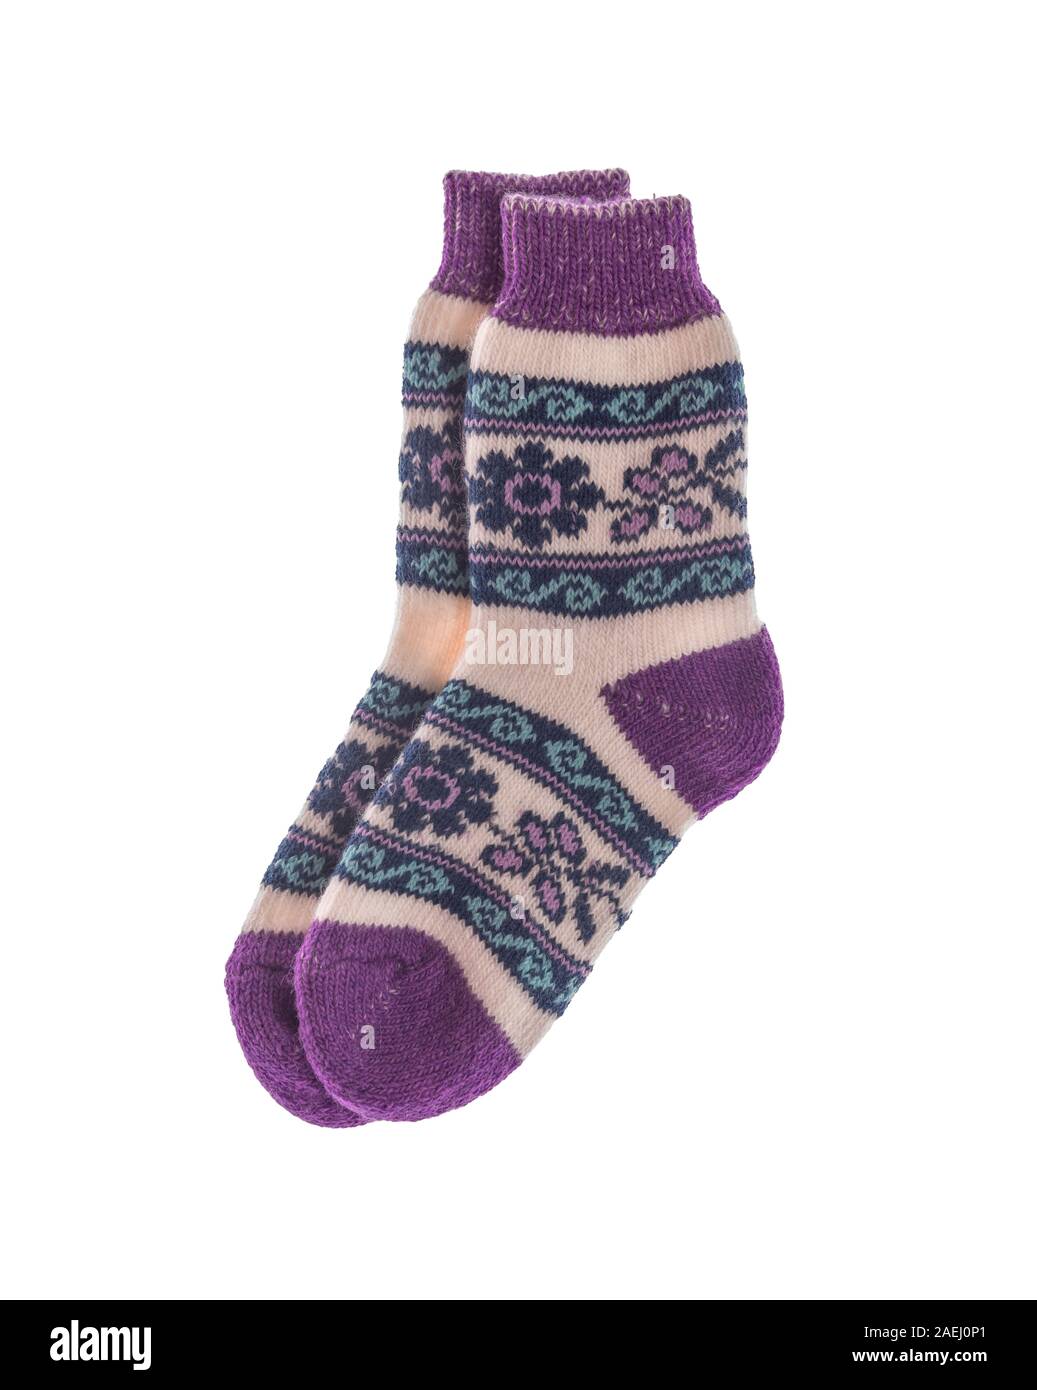 Wolle Winter Socken auf einen weißen Hintergrund. Stockfoto